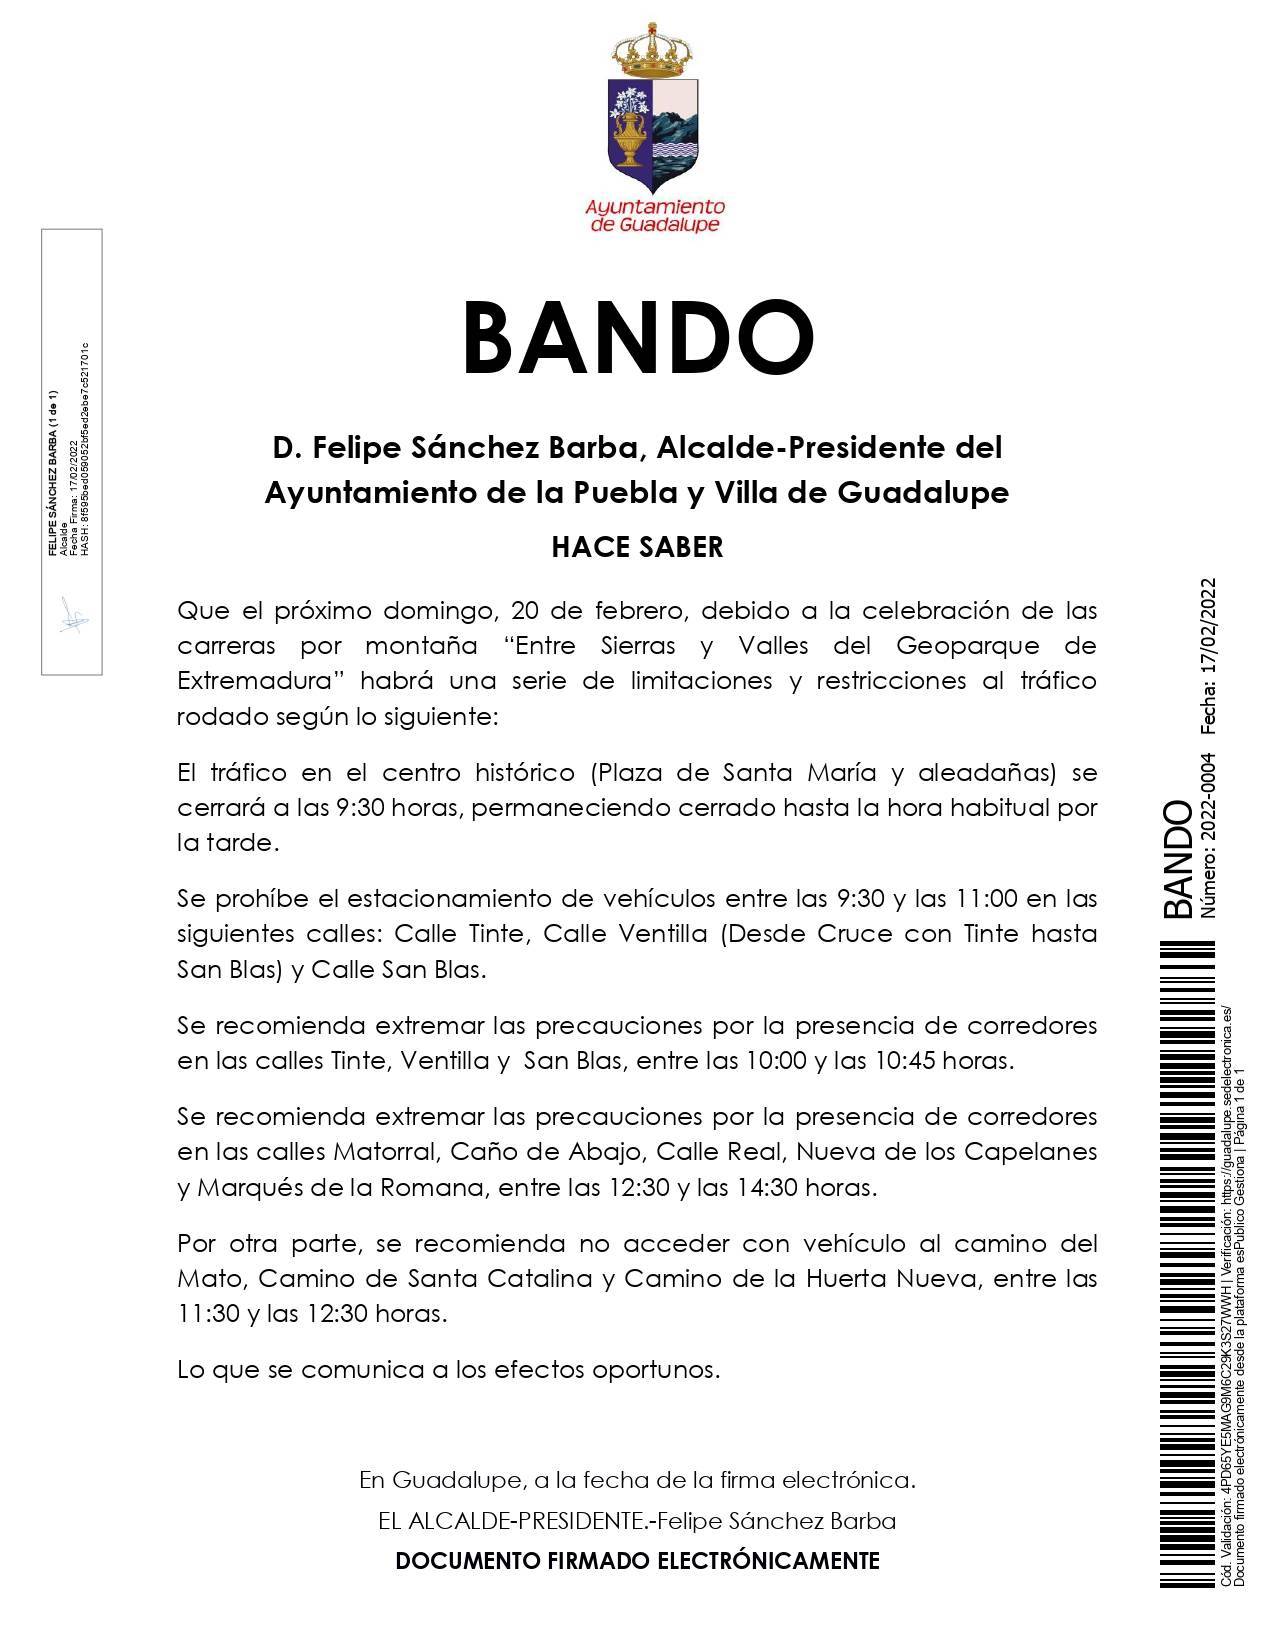 Restricciones por las carreras por montaña (2022) - Guadalupe (Cáceres)